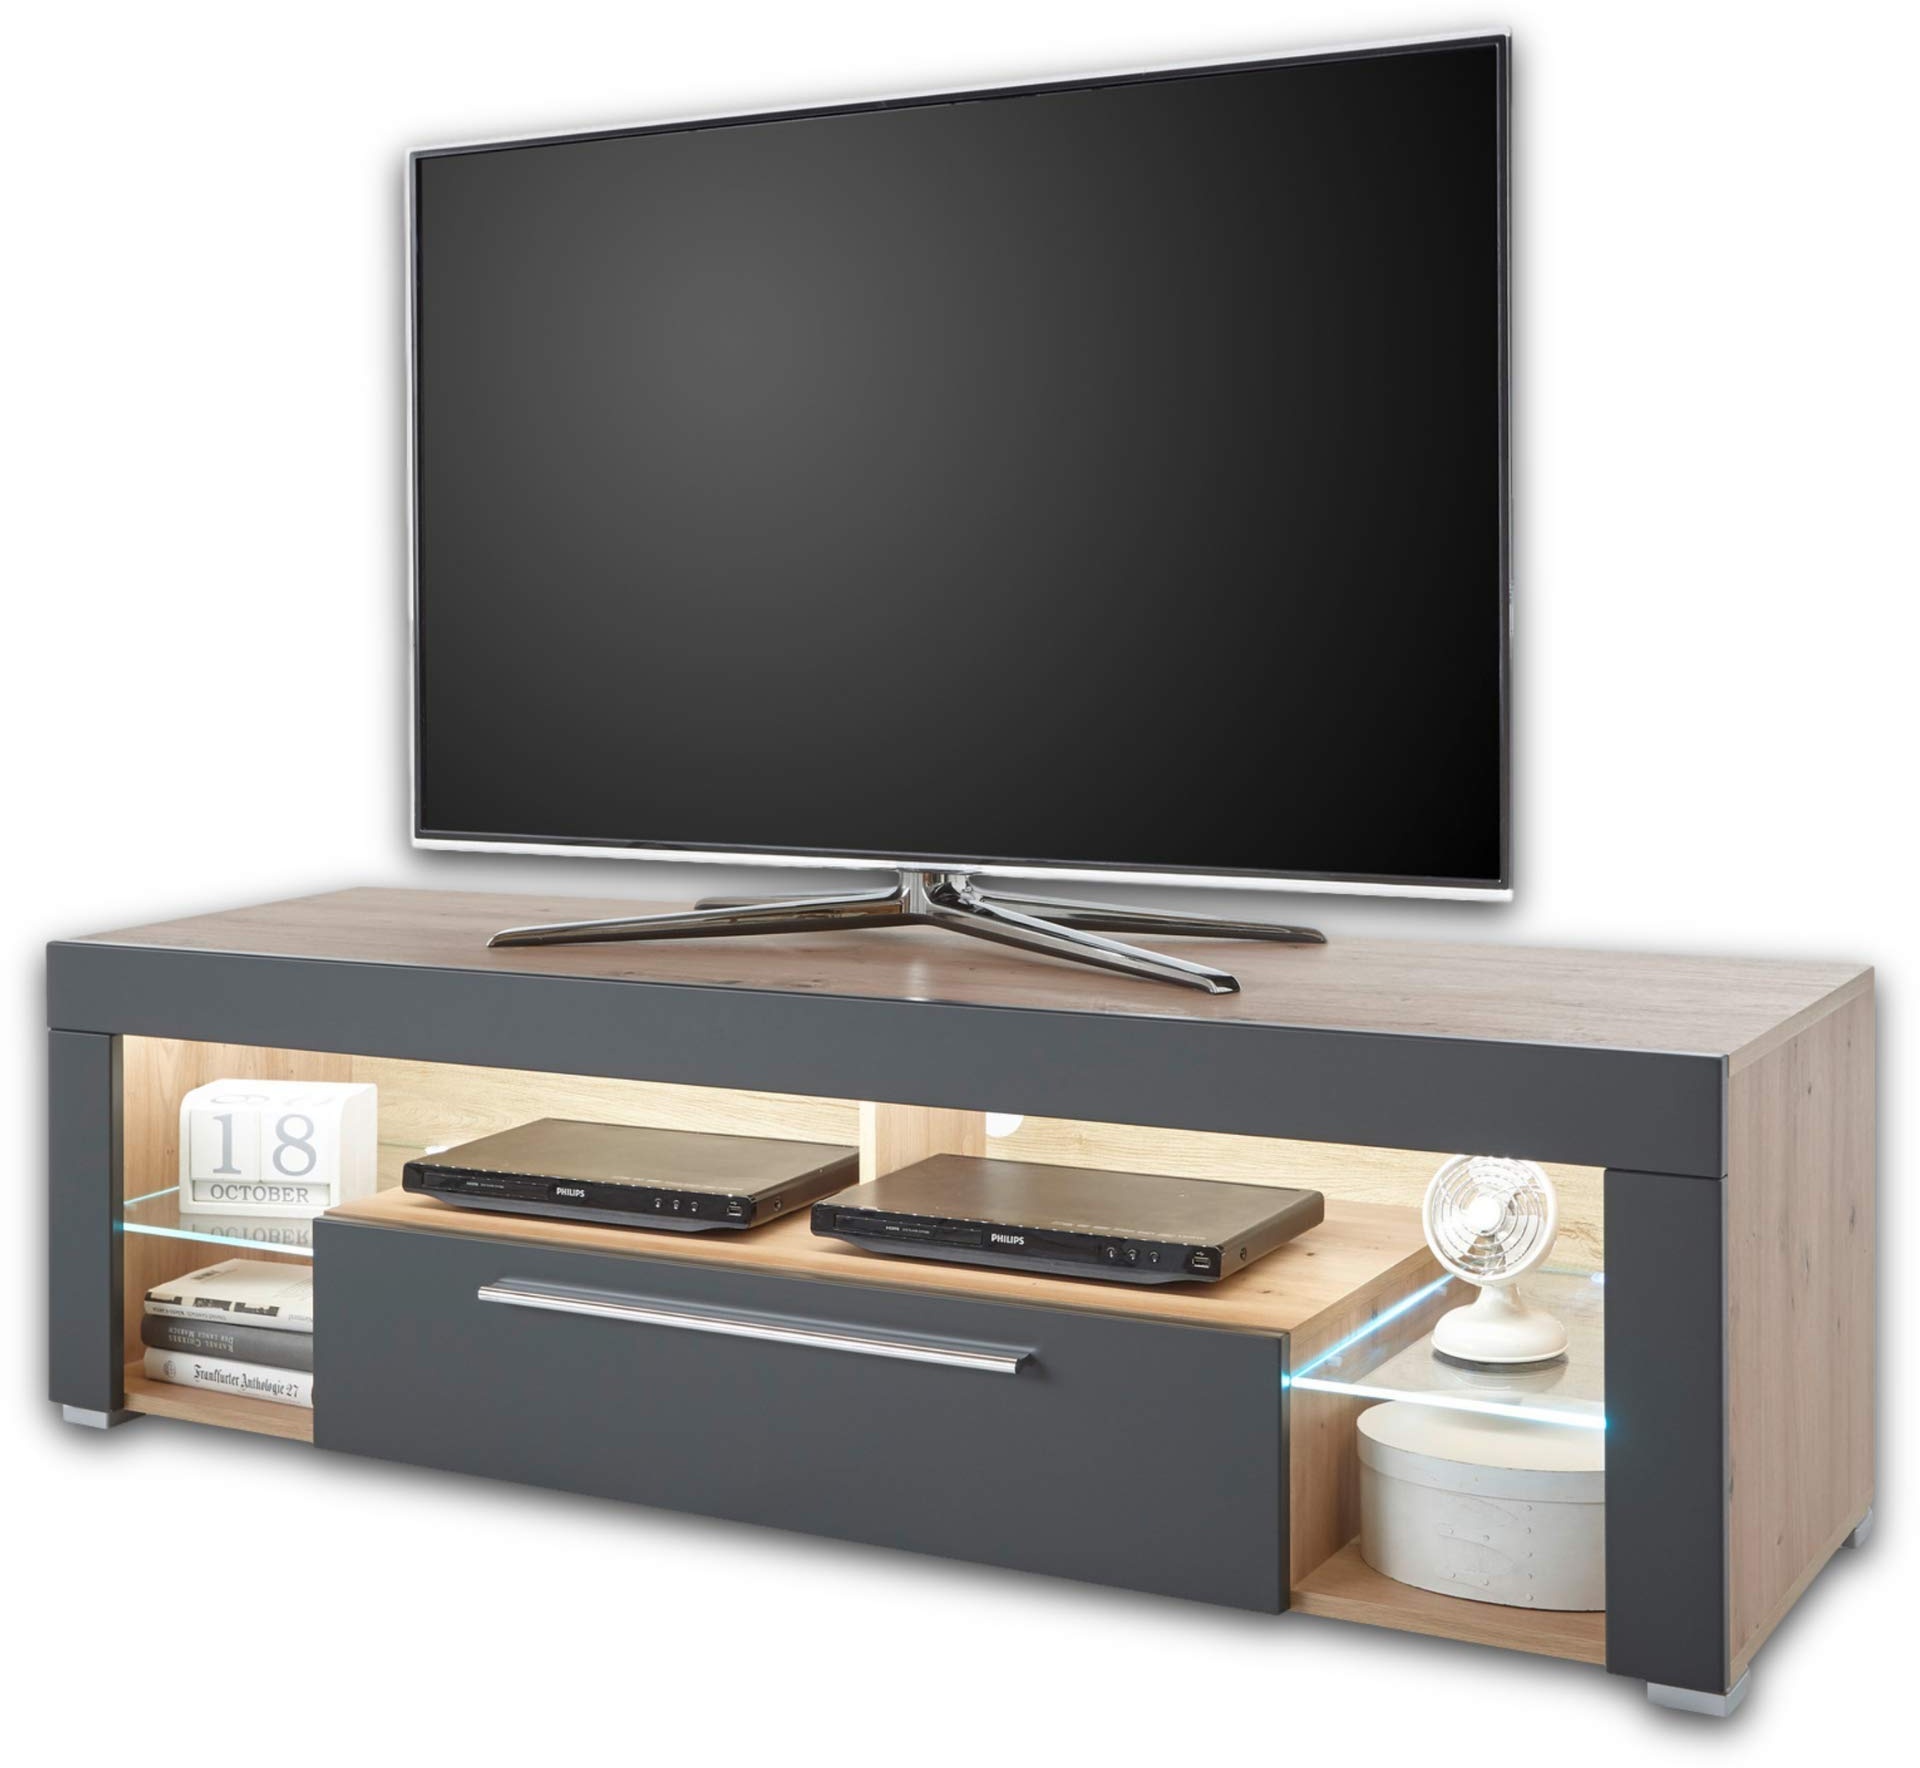 GOAL Lowboard in Artisan Eiche Optik, Grau mit LED-Beleuchtung - hochwertiges TV-Board mit viel Stauraum für Ihr Wohnzimmer - 153 x 44 x 44 cm (B/H/T)